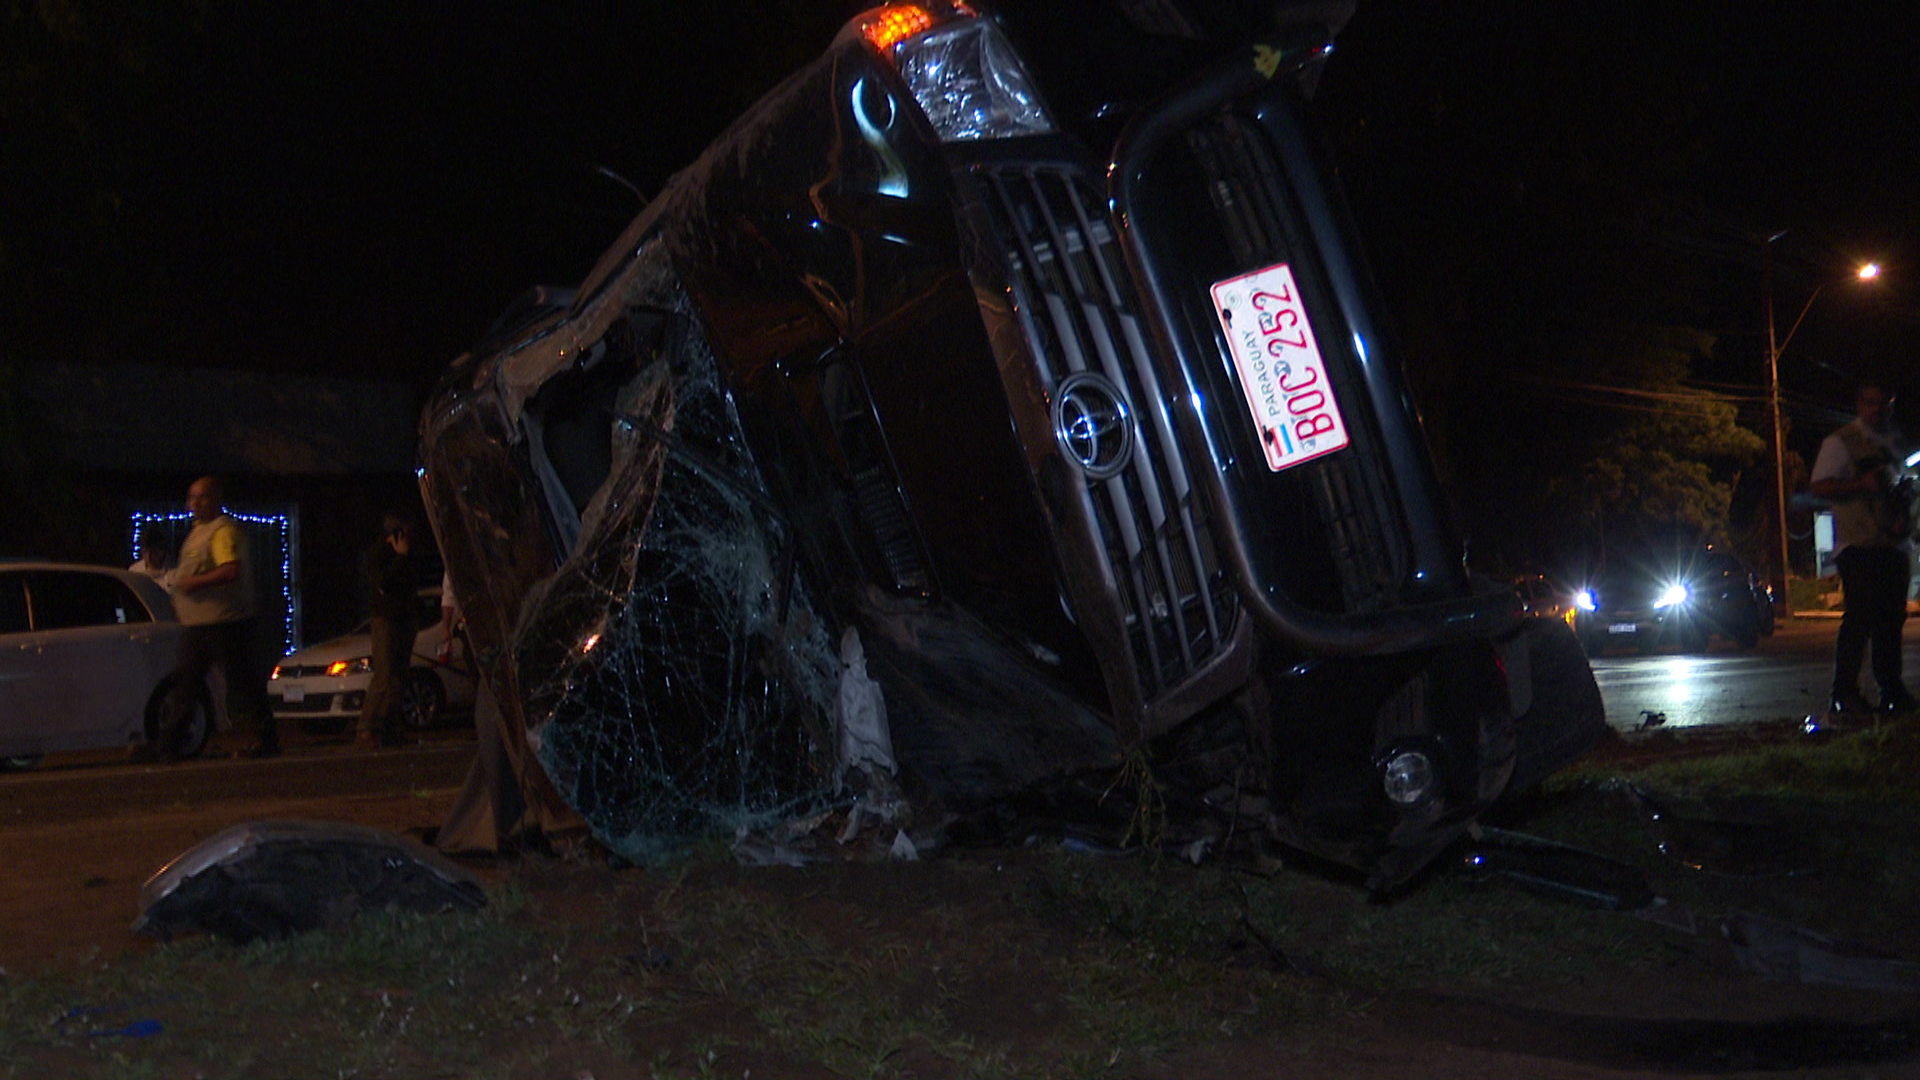 La camioneta terminó volcando, tras ser impactada en la parte trasera por un vehículo, cuyo conductor estaba alcoholizado.